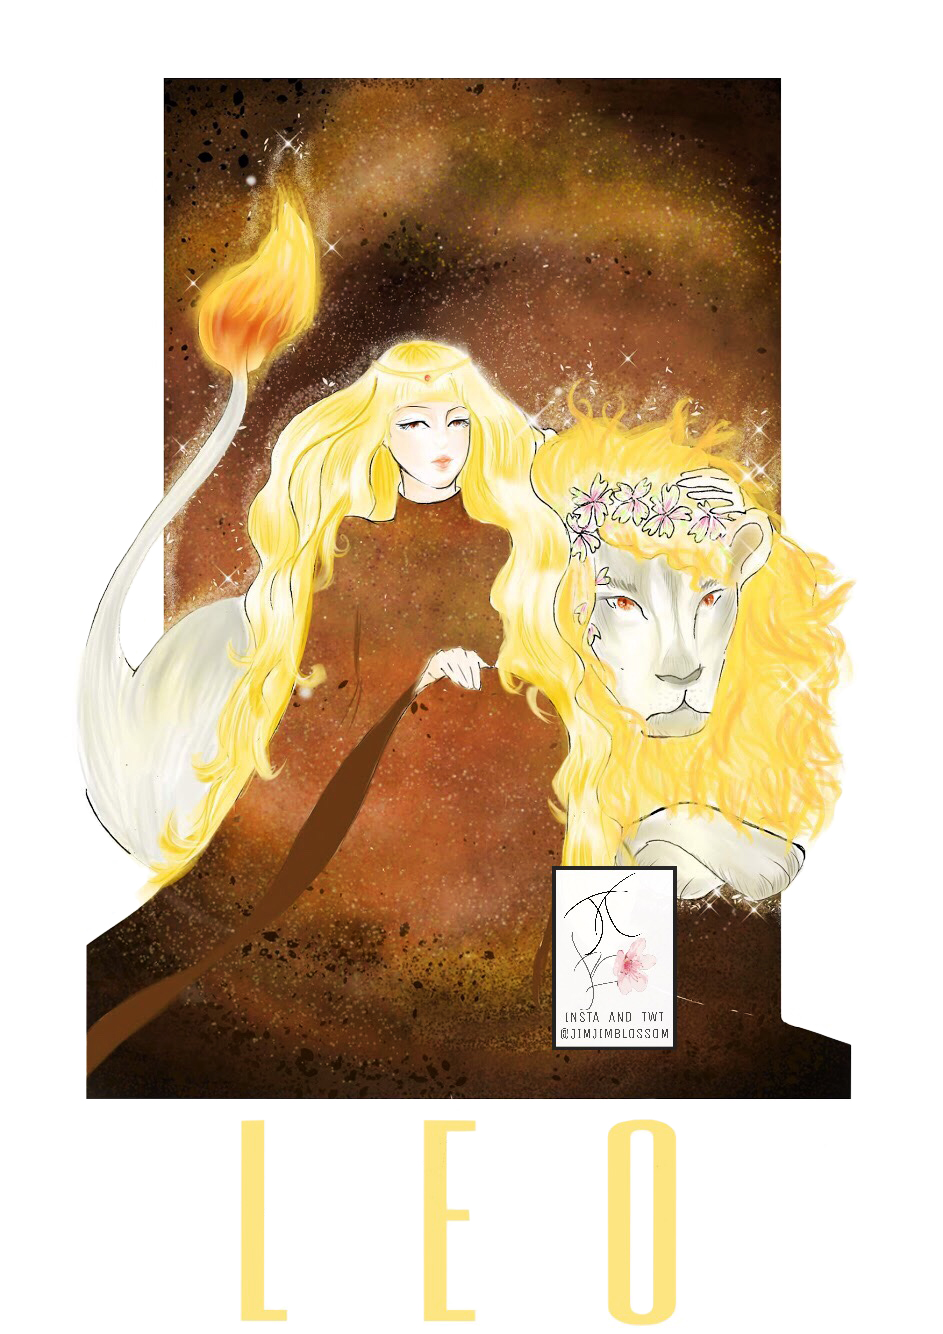 Cô gái tóc vàng ngồi cạnh con sư tử